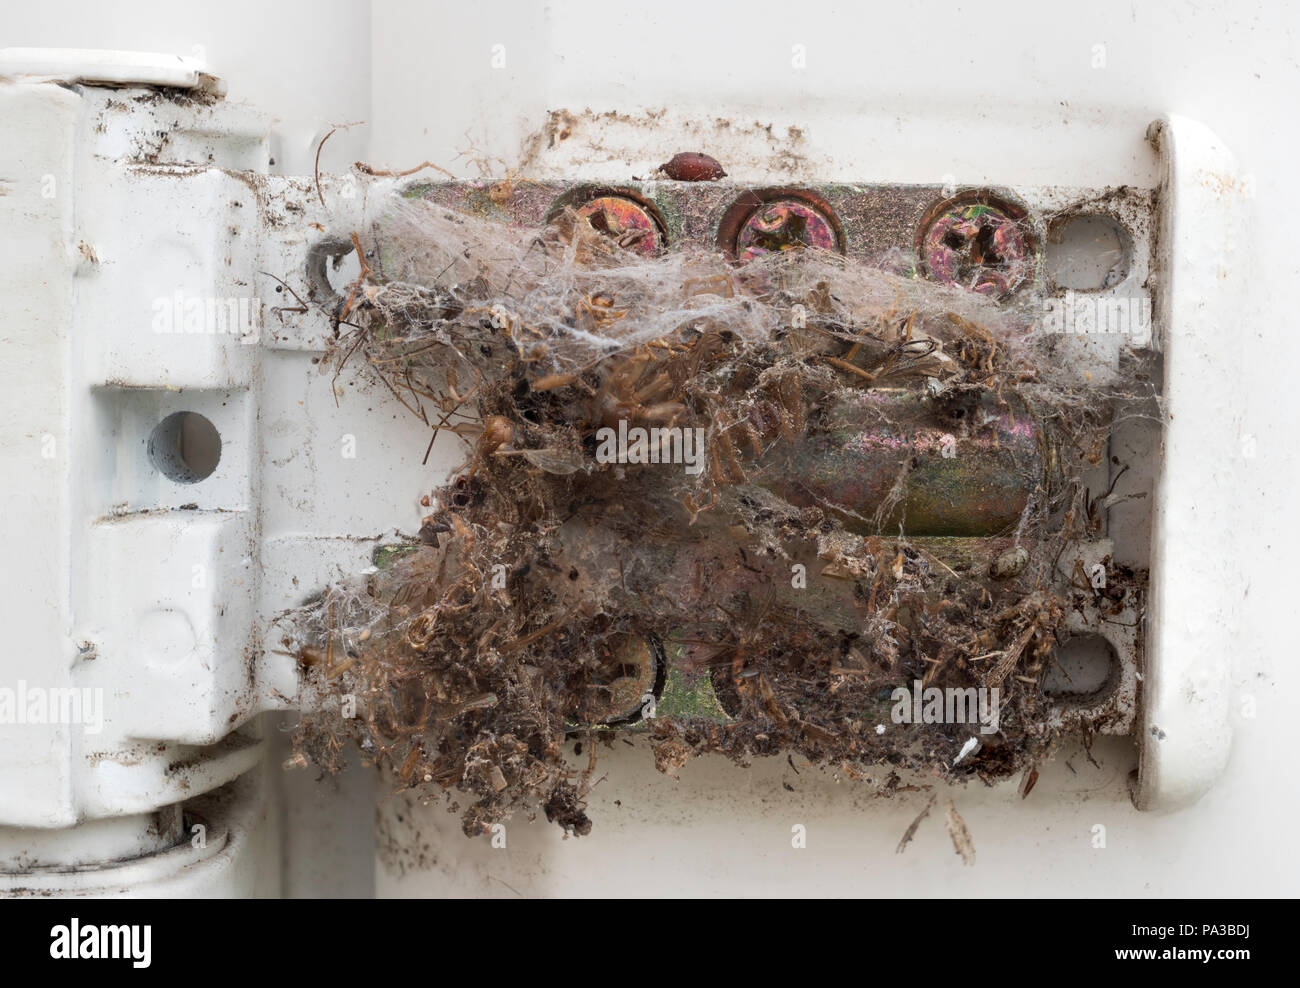 Insectes morts pris dans une toile d'araignée dans le mécanisme de la charnière d'une porte intérieure, England, UK Banque D'Images